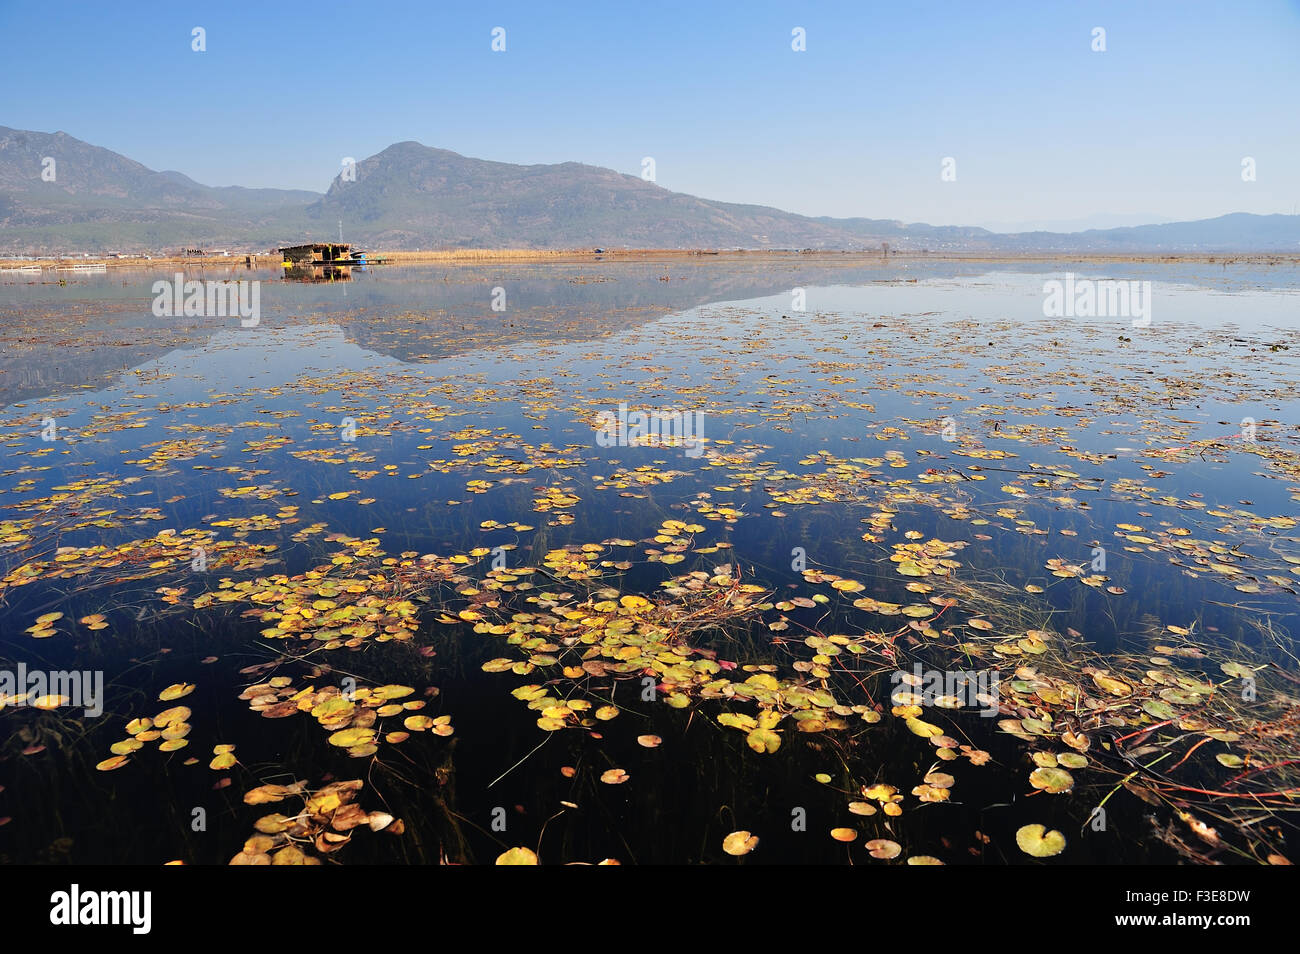 Over LaShiHai a lake in Yunnan Stock Photo